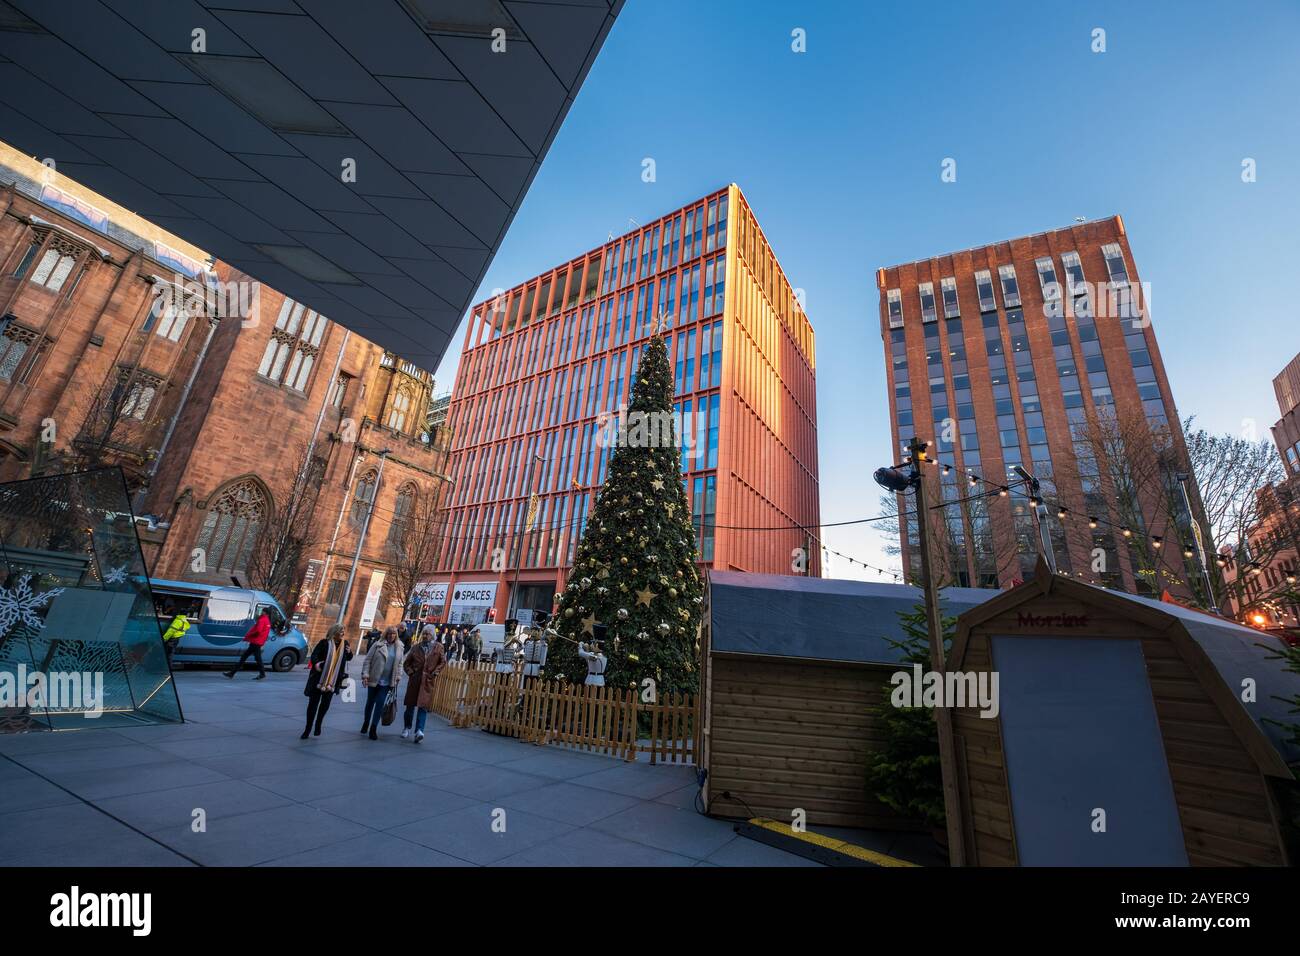 Spinningfields espace moderne d'affaires, de vente au détail et de développement résidentiel de Manchester pendant Noël Banque D'Images